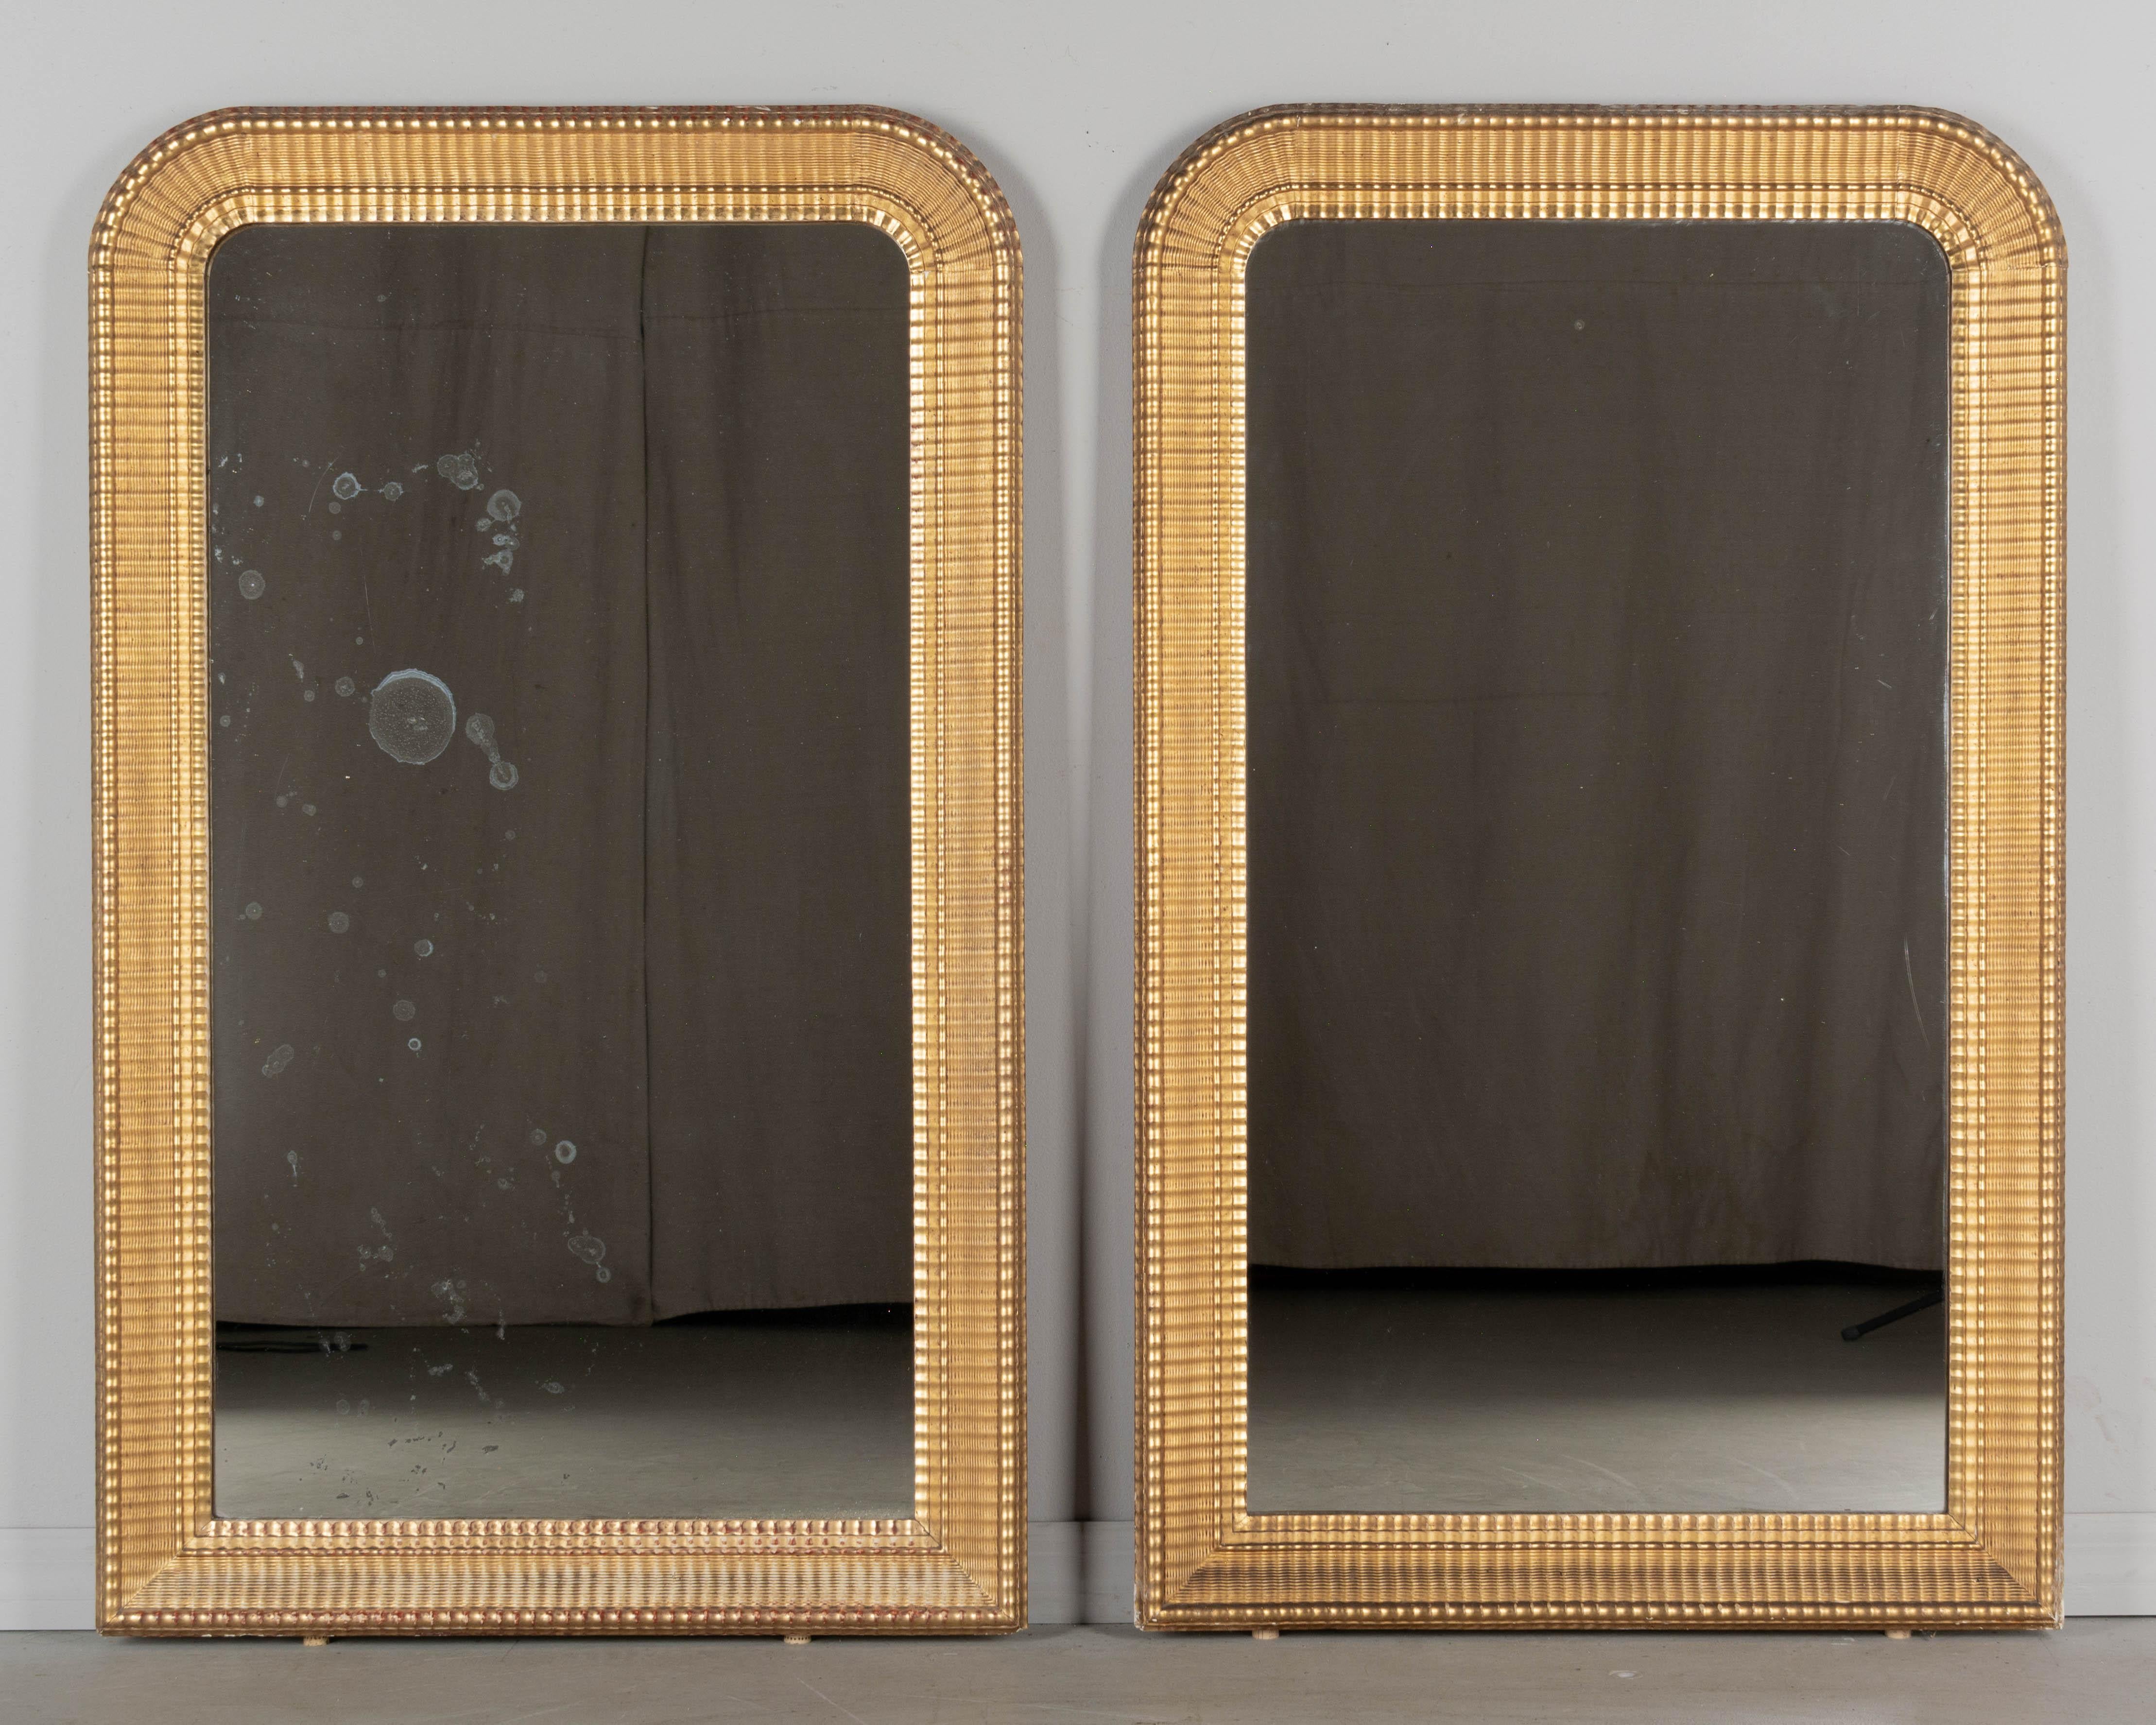 Ein Paar französischer Vergoldungsspiegel im Louis-Philippe-Stil aus dem 19. Jahrhundert mit geschwungener Oberseite, 3,5 Zoll breitem, geripptem Rahmen und warmer Vergoldung. Originalspiegel mit alter Versilberung, einer mit Fleckenbildung.